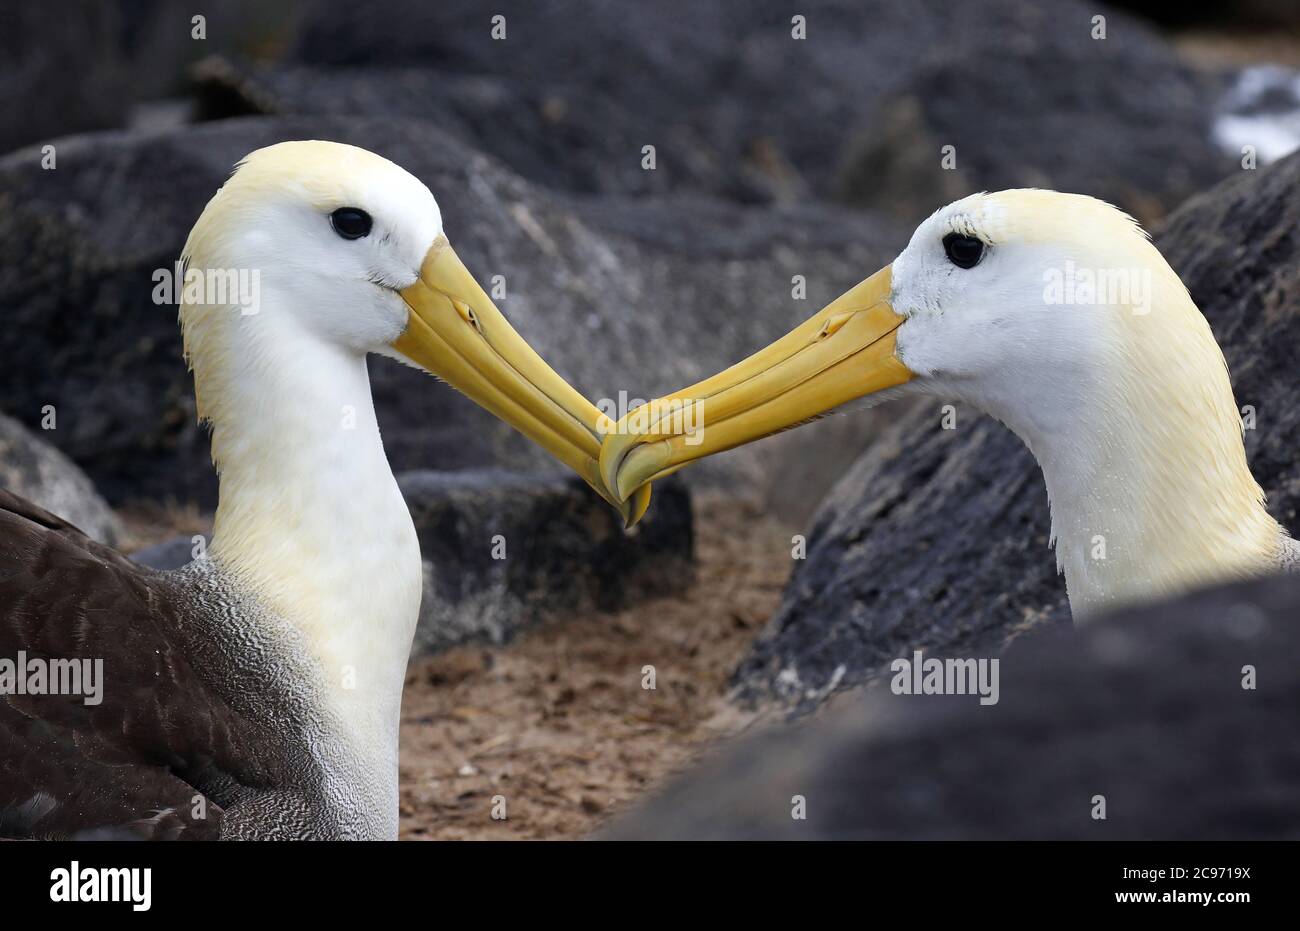 Albatros ondulés, albatros de Galapagos (Diomedea irrorata, Phoebastria irrorata), liaison par paires, albatros ondulés en danger critique sur l'île d'Espanola, Équateur, îles Galapagos, Espanola Banque D'Images